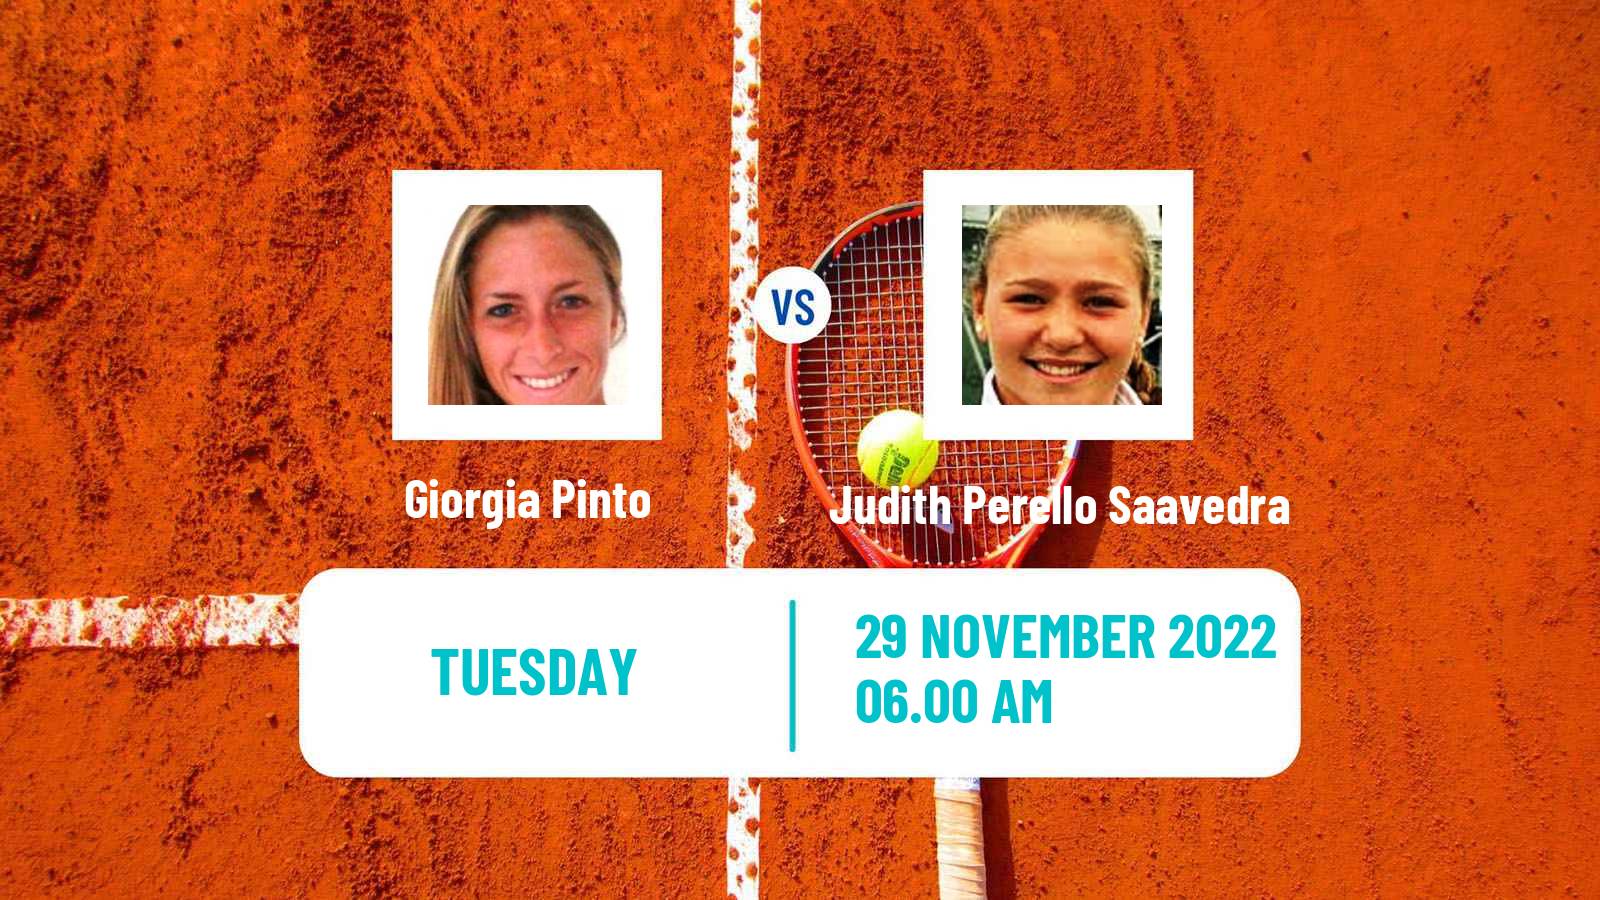 Tennis ITF Tournaments Giorgia Pinto - Judith Perello Saavedra